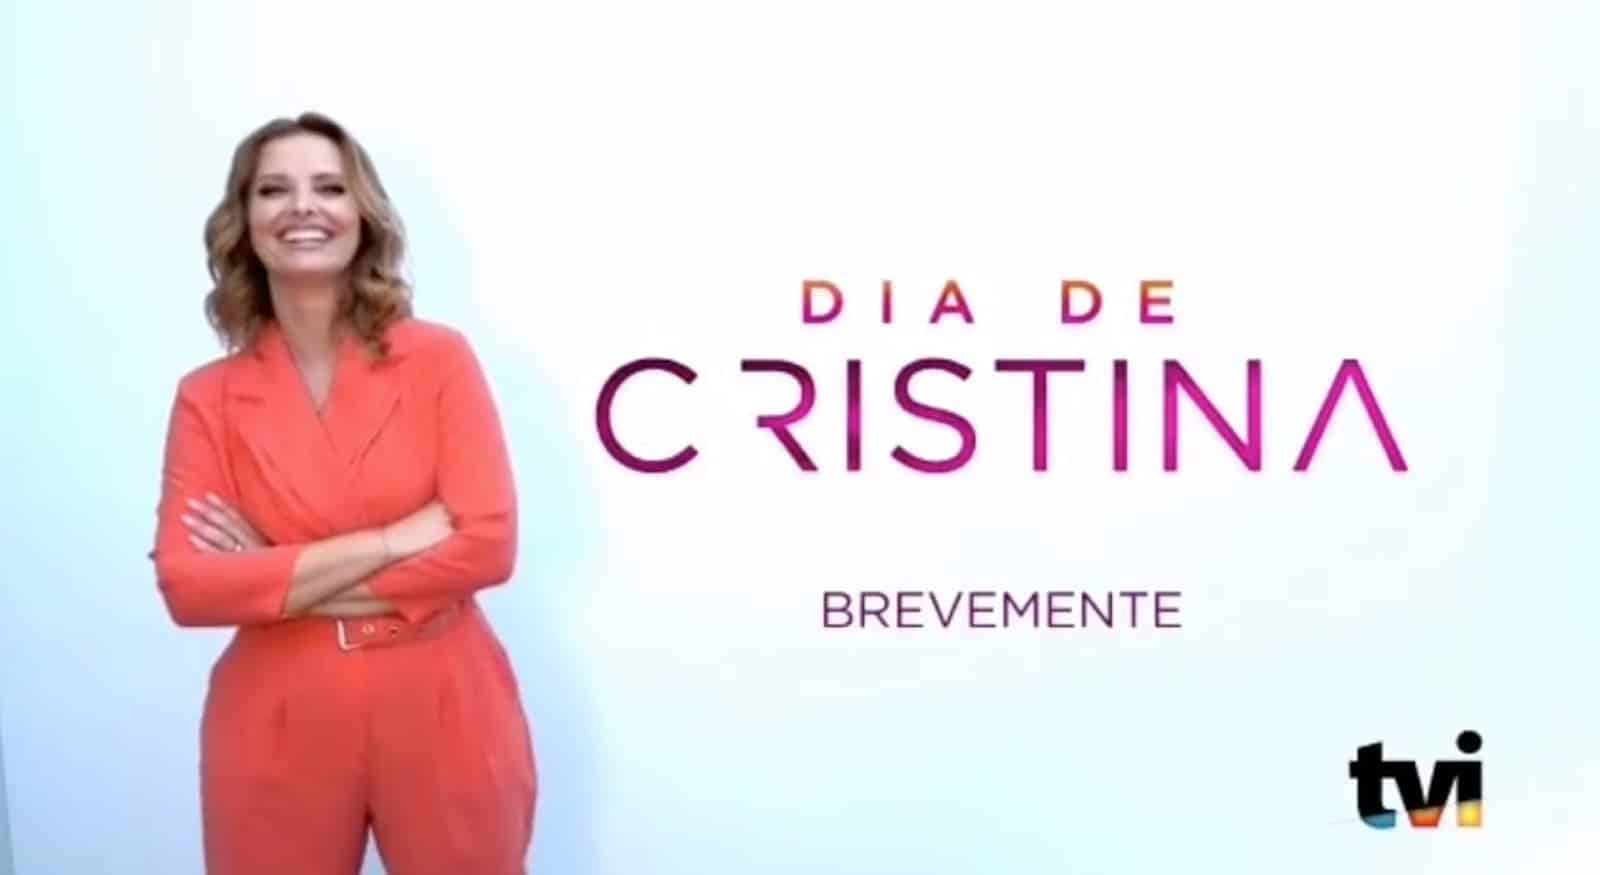 Cristina Ferreira Dia De Cristina